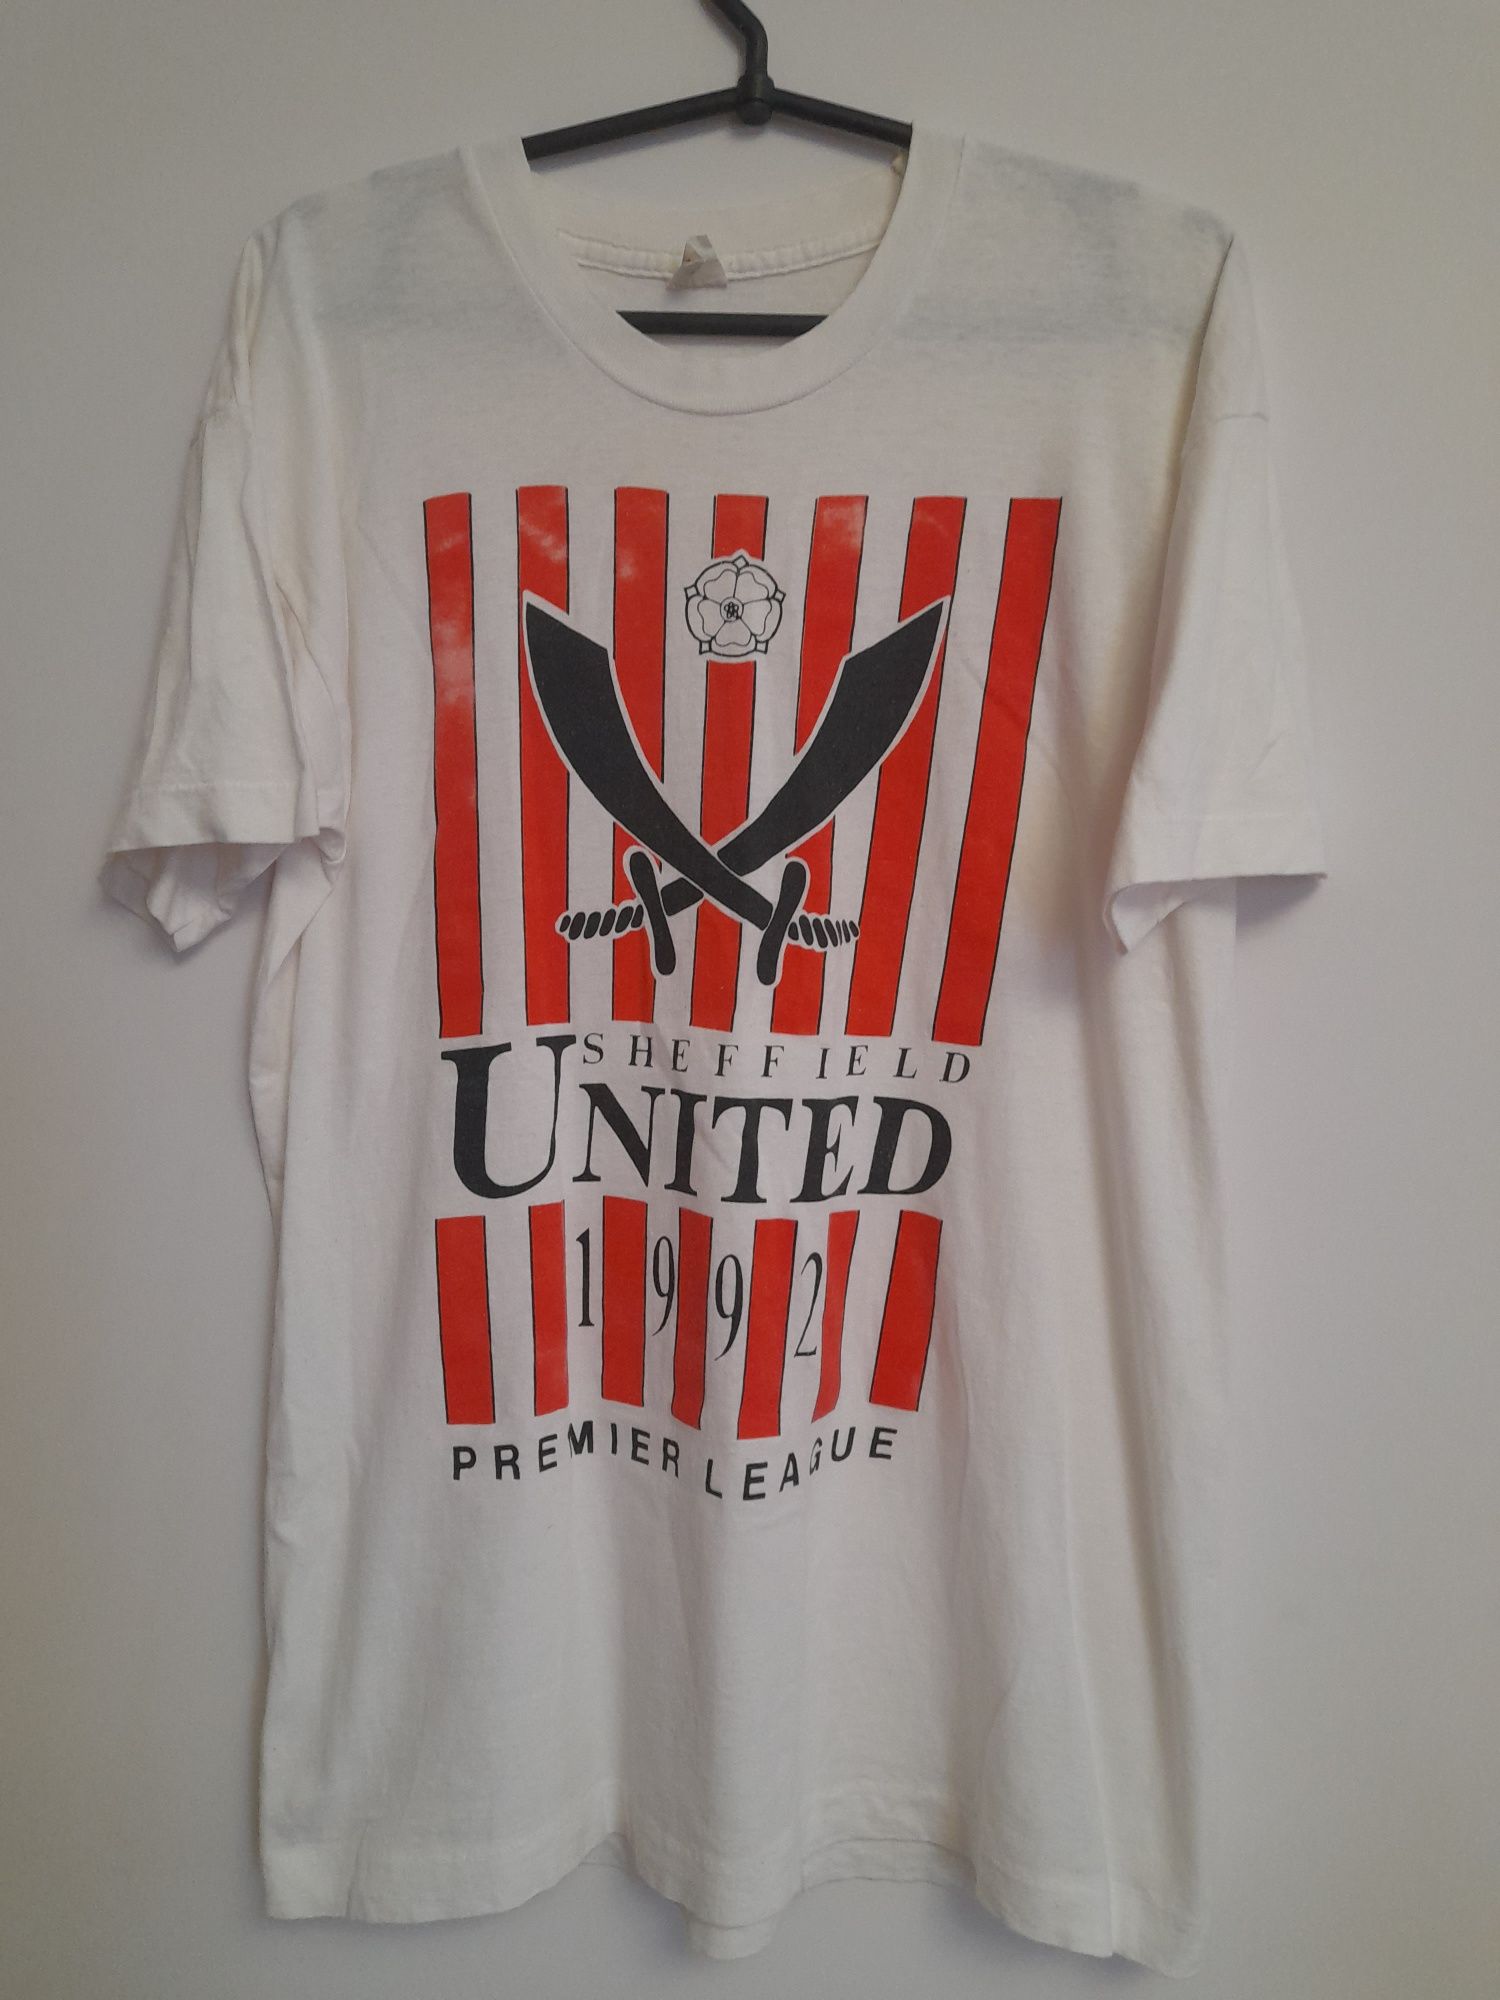 Фанатская футболка мерч Sheffield United 1992 premier league, L